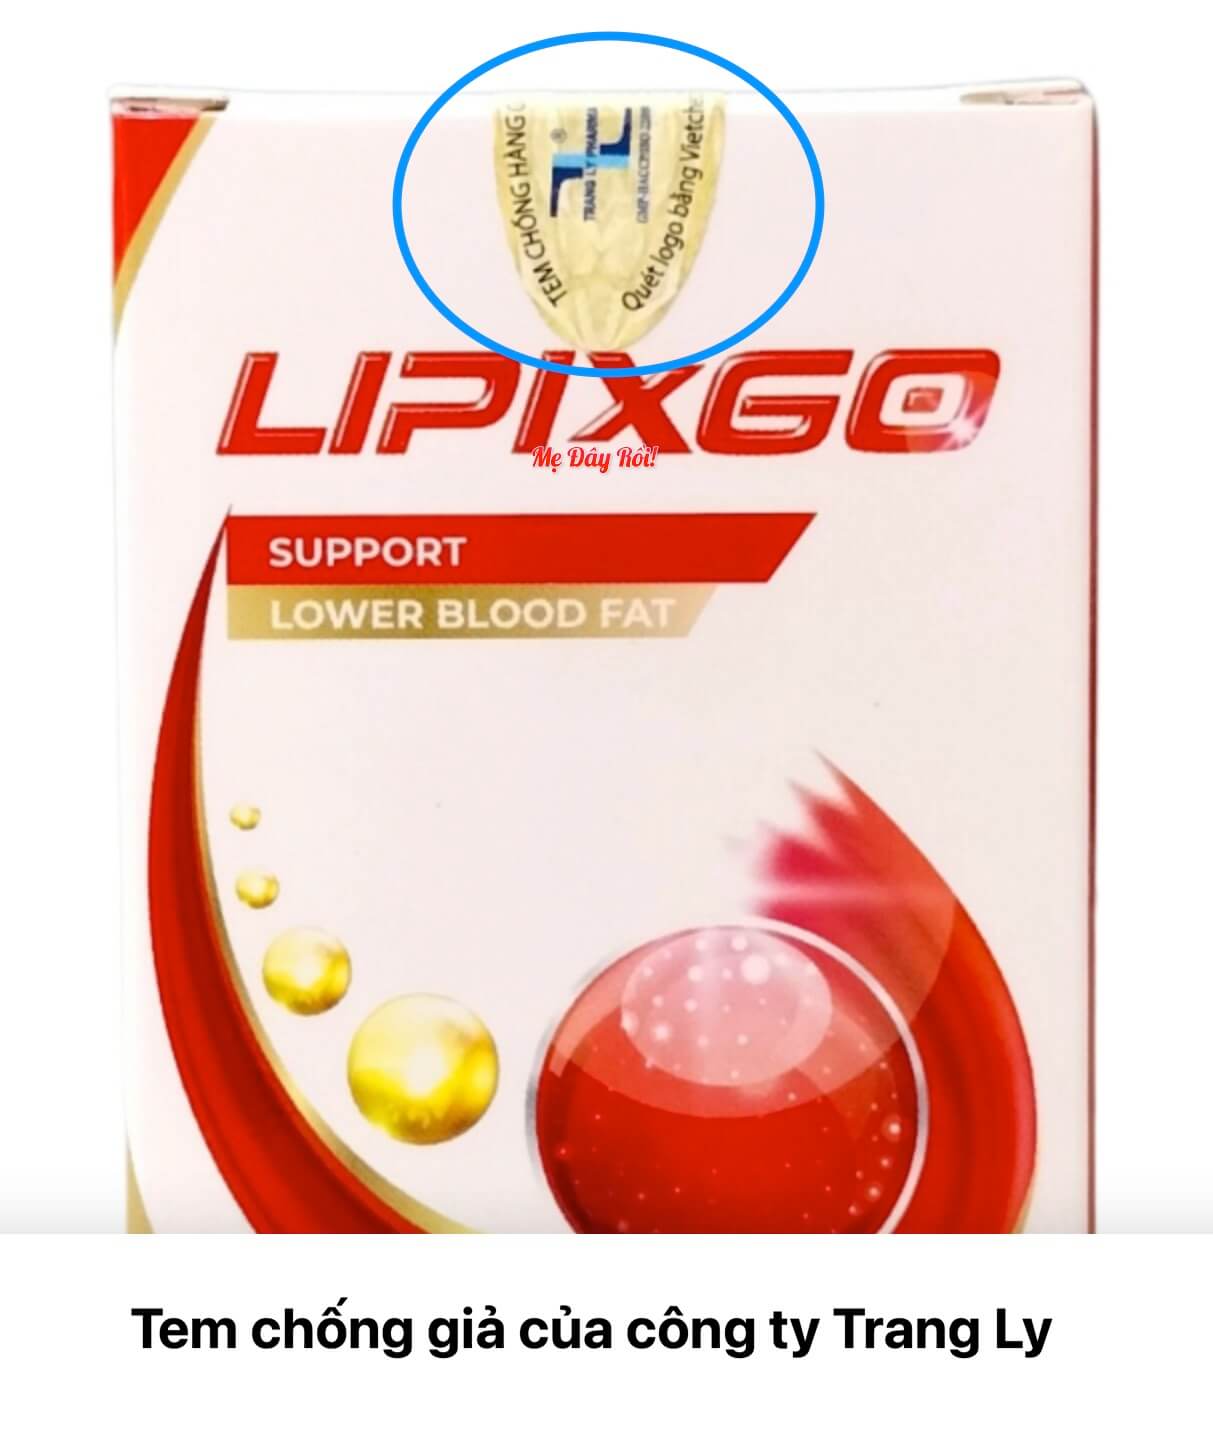 Lipixgo hỗ trợ giảm mỡ máu có tốt không? Giá bao nhiêu? Mua ở đâu chính hãng? hình 28